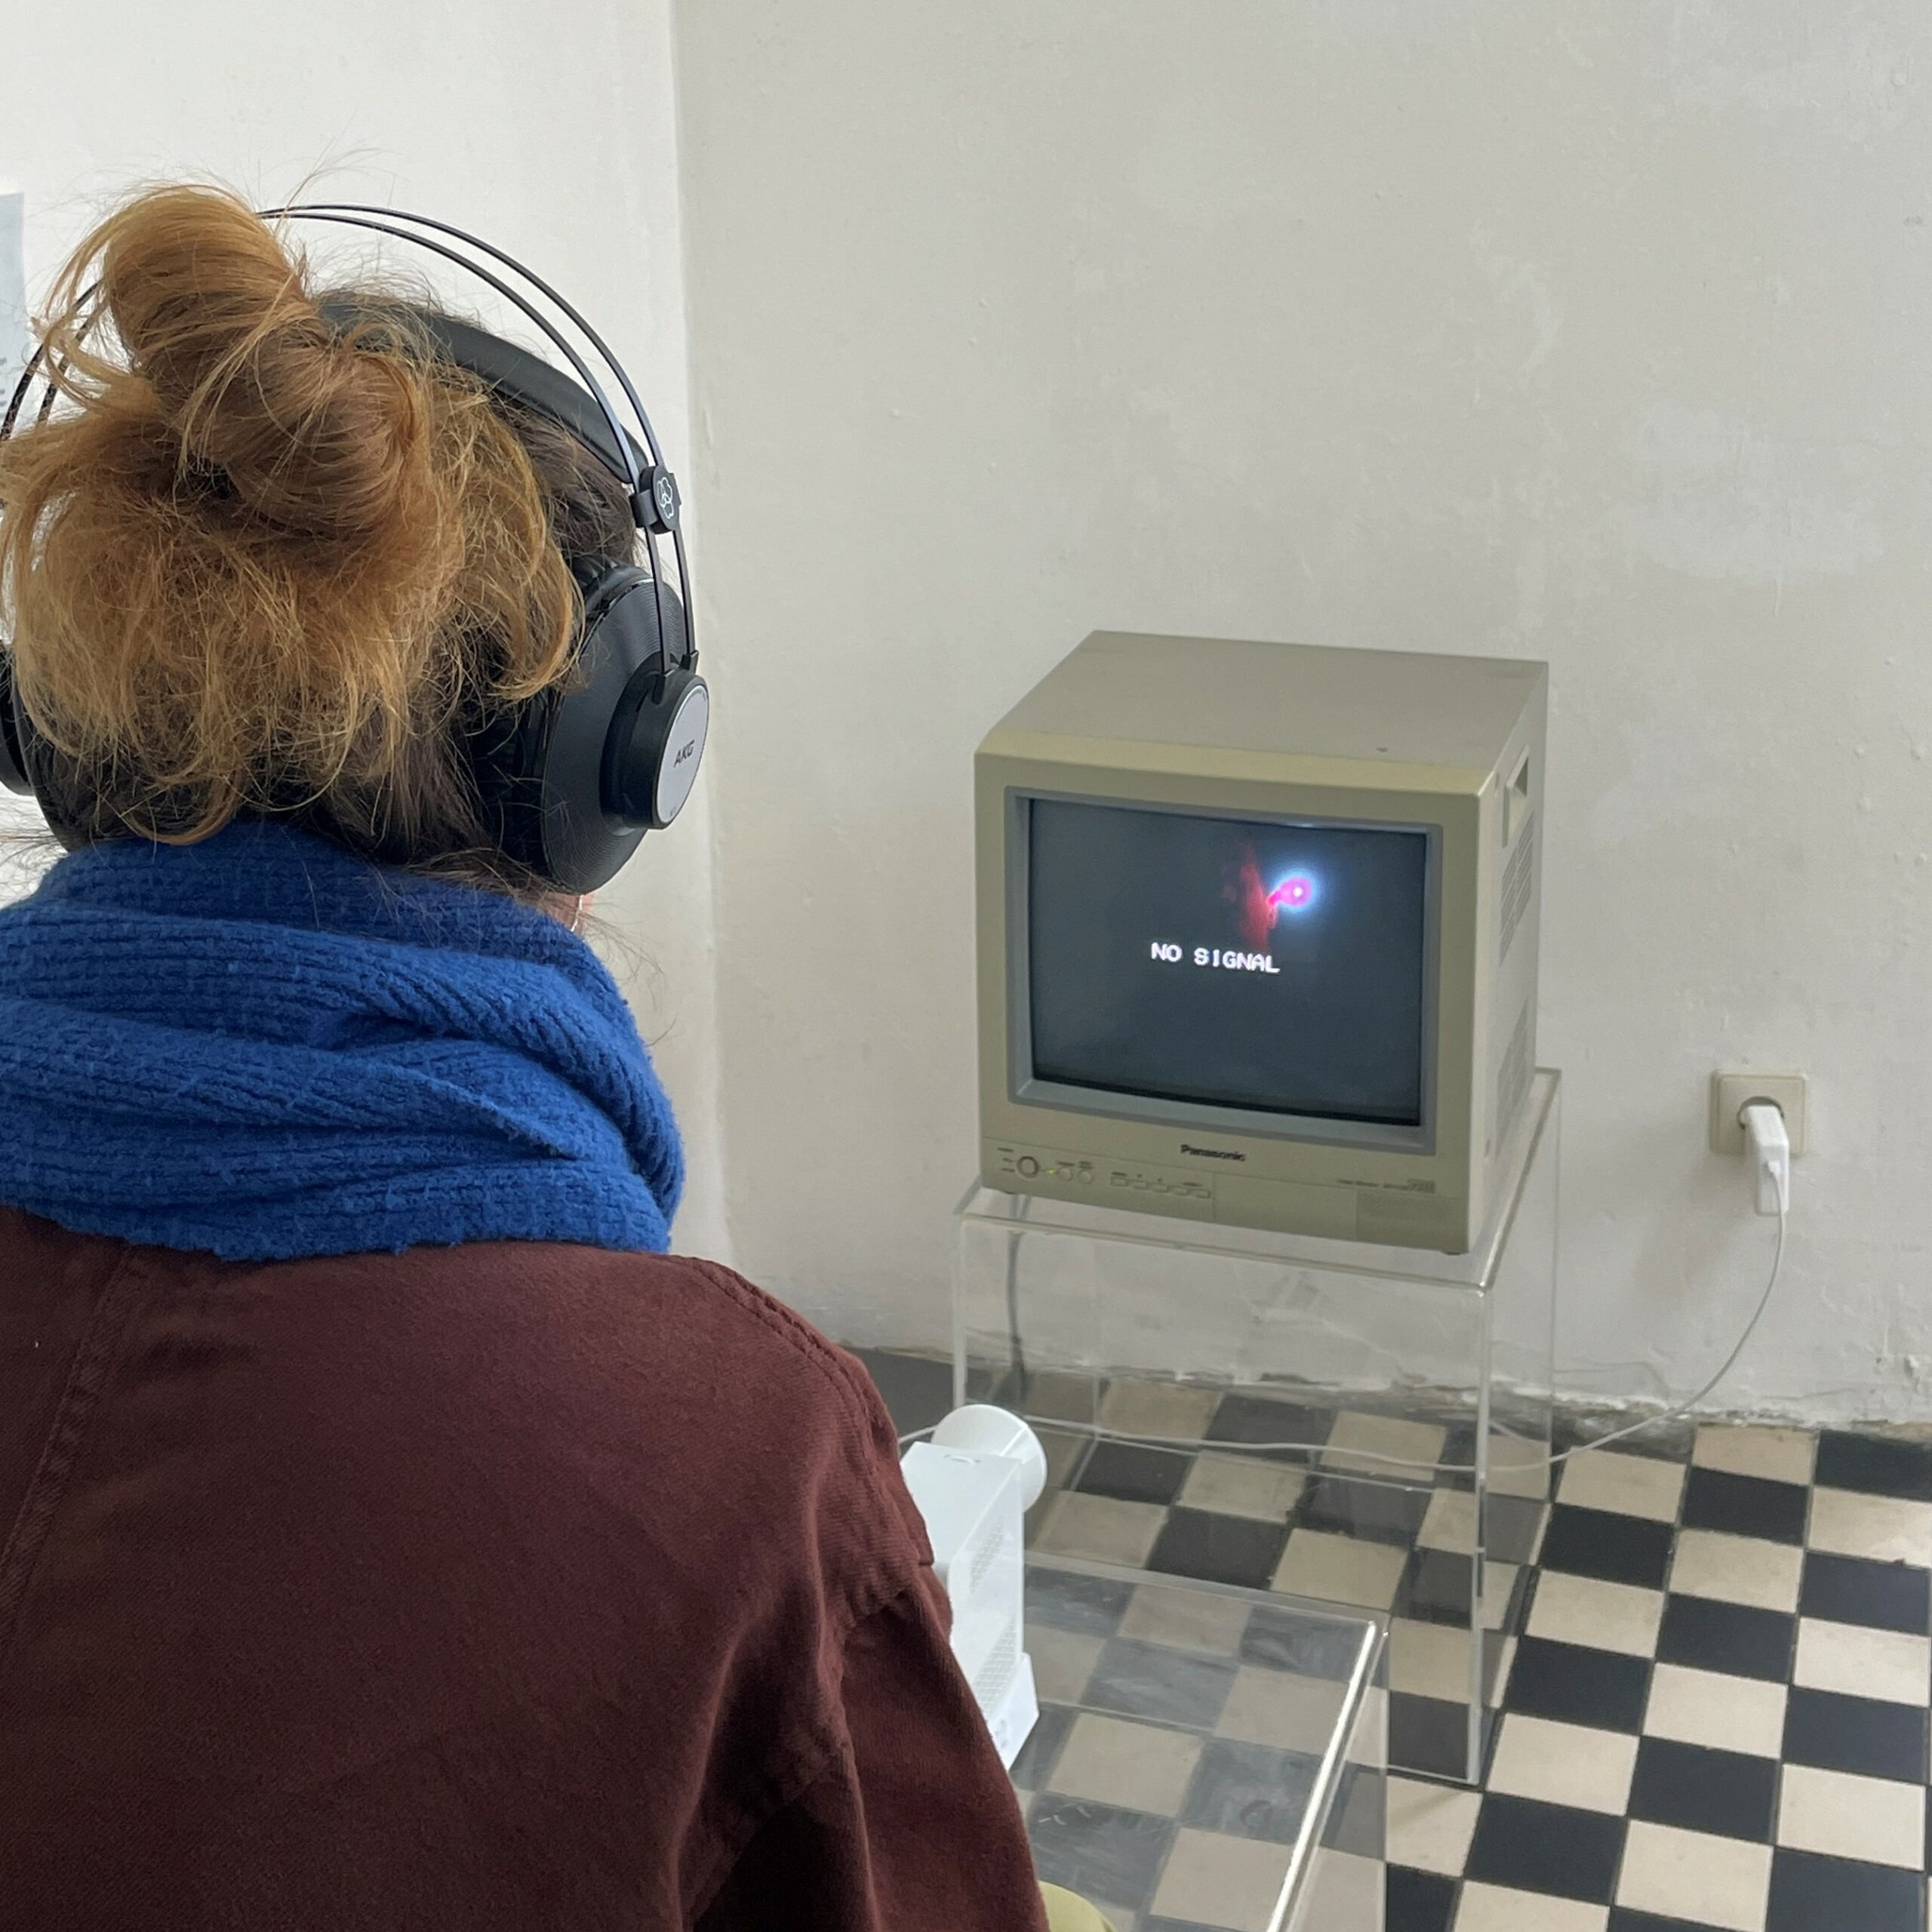 Zu sehen ist eine Kunstinstallation mit einem alten Bildschirm ohne Signal, vor dem eine Frau sitzt.